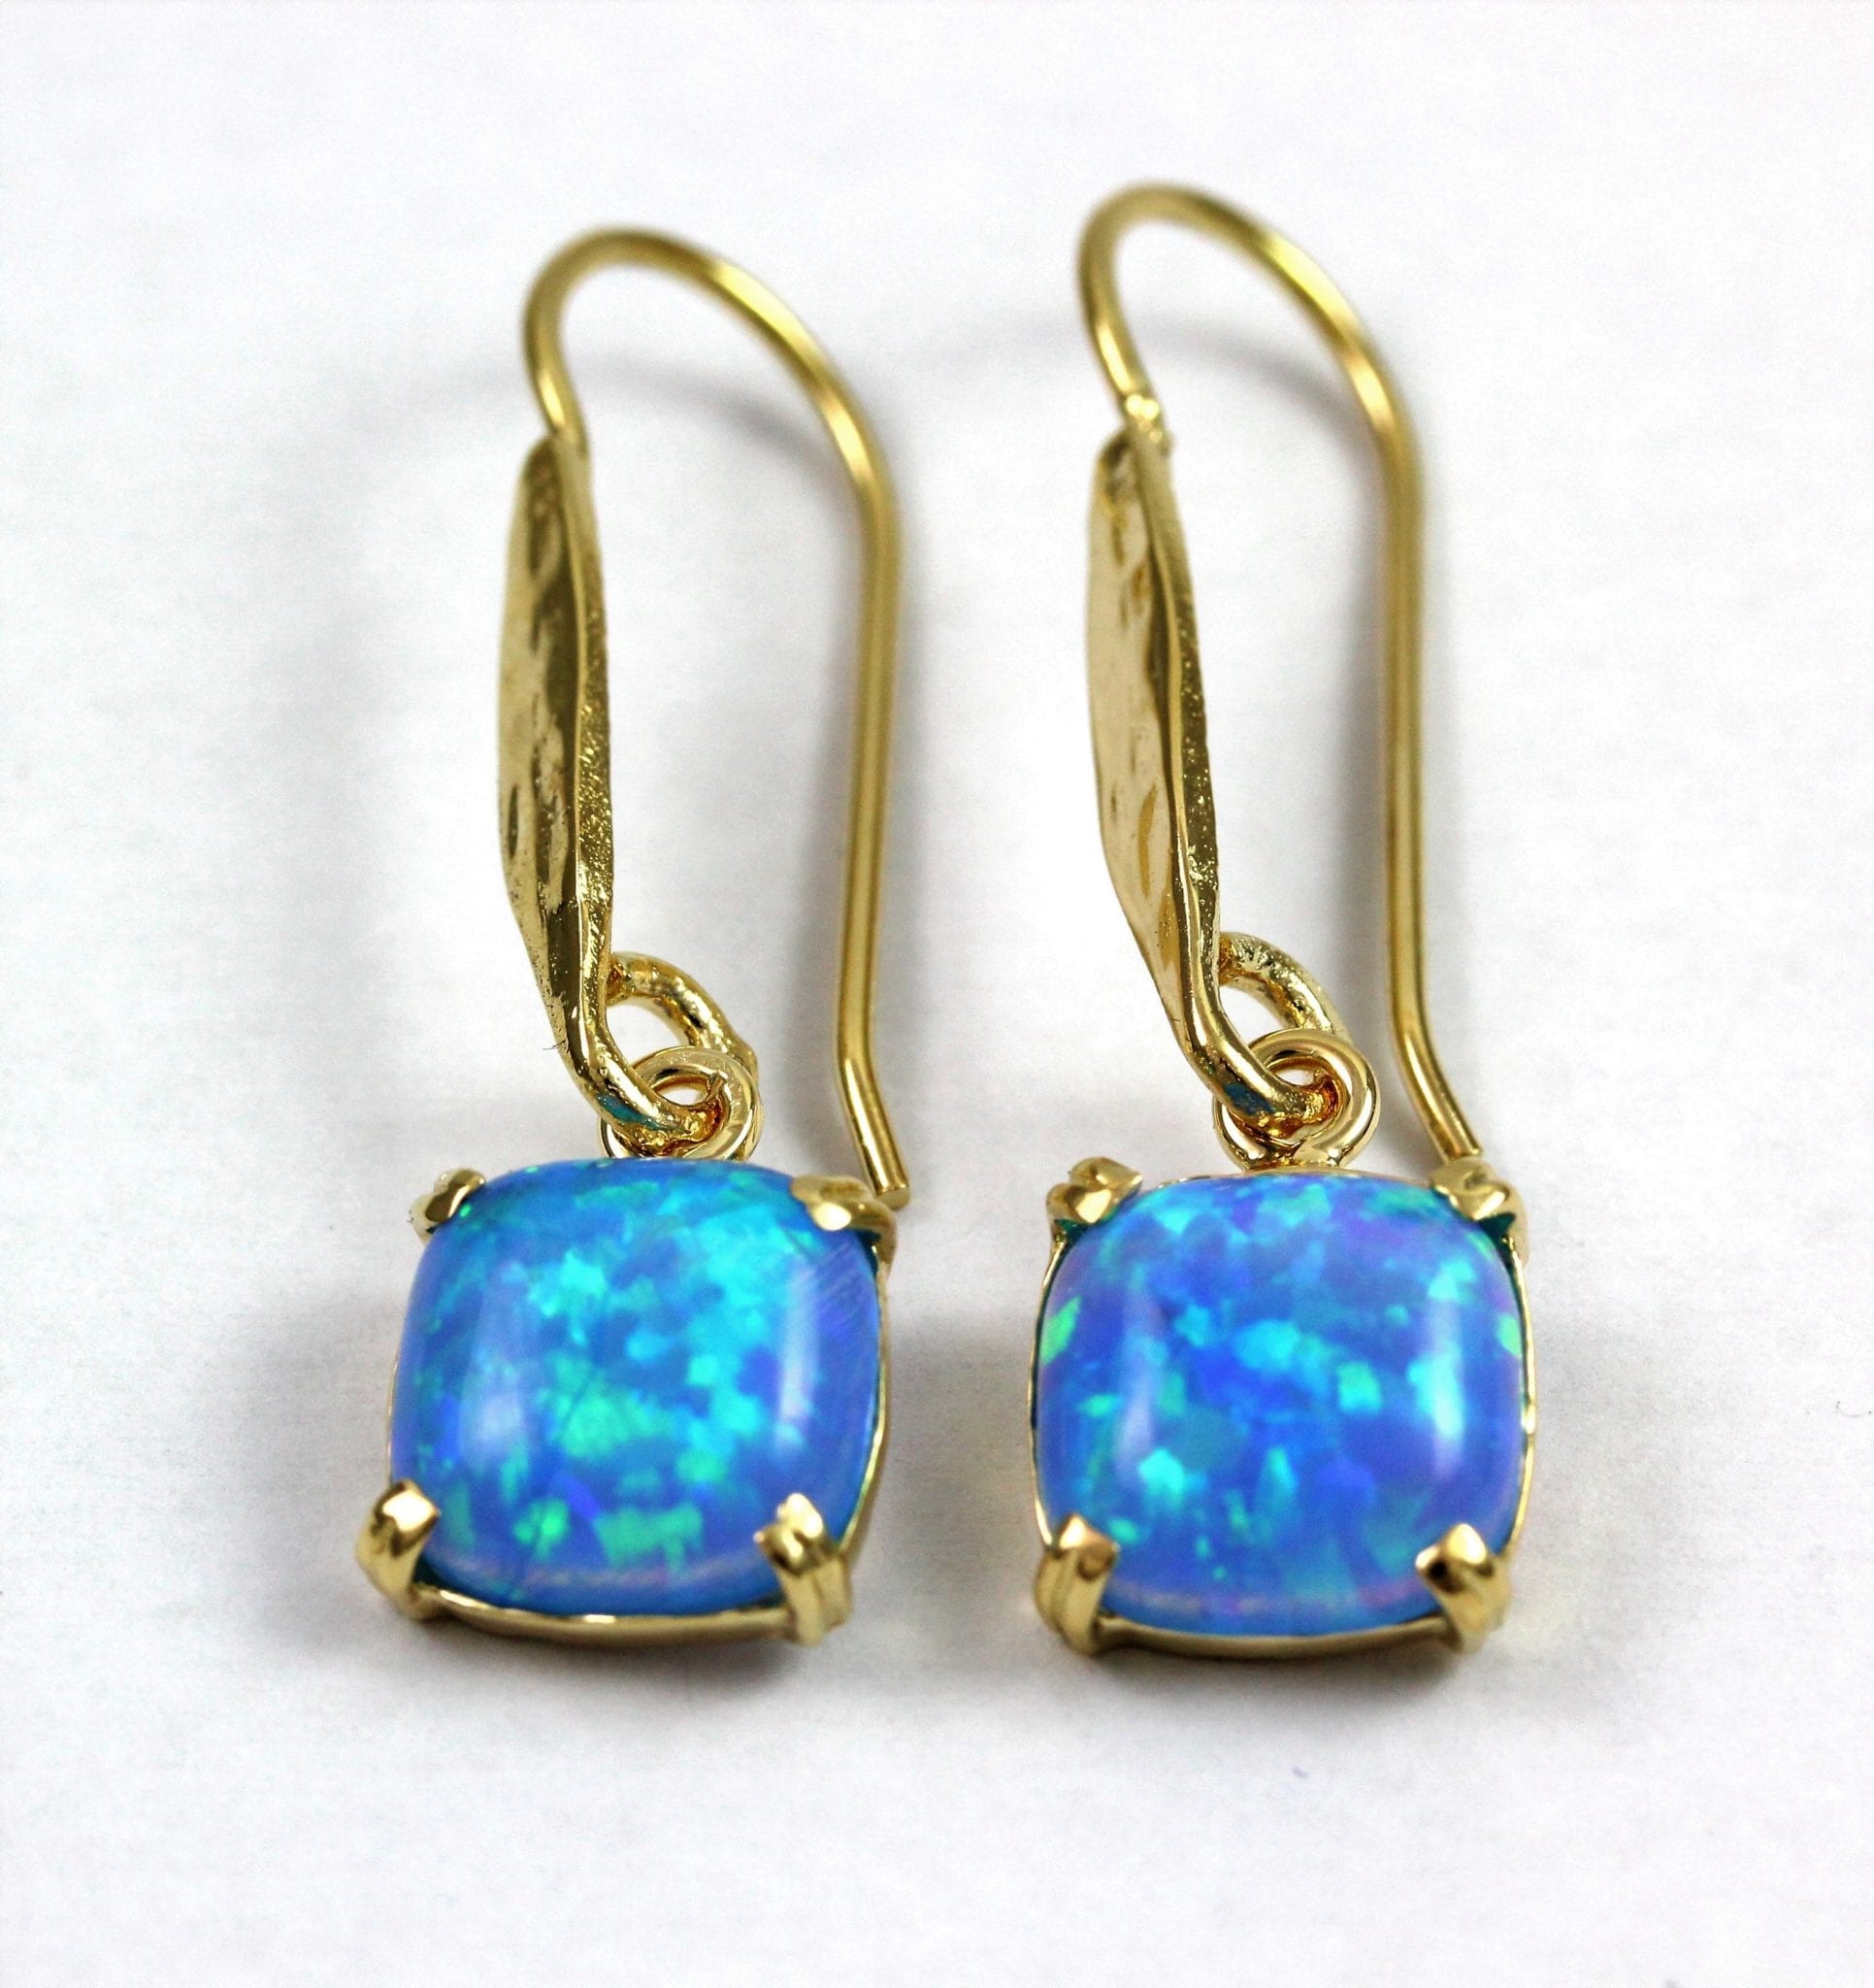 24k Gold Vermeil Opal earrings - Yaron Morhaim